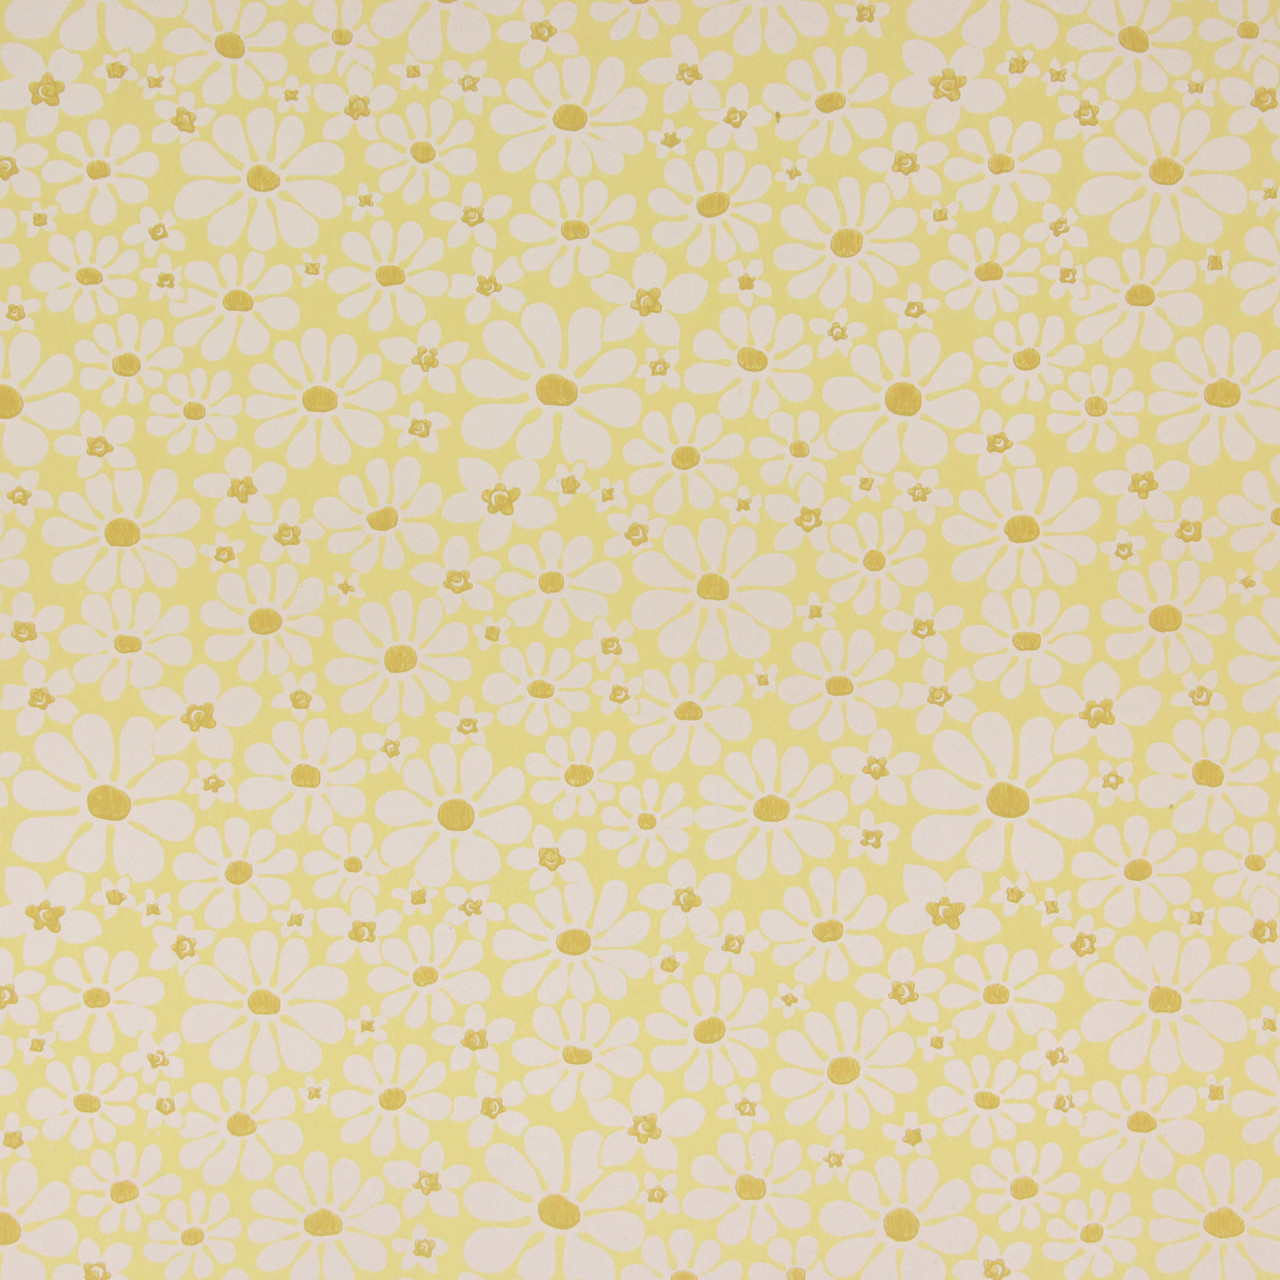 Giấy dán tường vintage hoa cúc trắng trên nền vàng thập niên 1970 sẽ mang lại cho căn phòng của bạn một vẻ đẹp sang trọng và cổ điển. Thiết kế tinh tế và độc đáo sẽ khiến bạn cảm thấy thích thú và tự hào khi sở hữu sản phẩm này. Hãy truy cập trang Etsy để có thêm thông tin chi tiết.